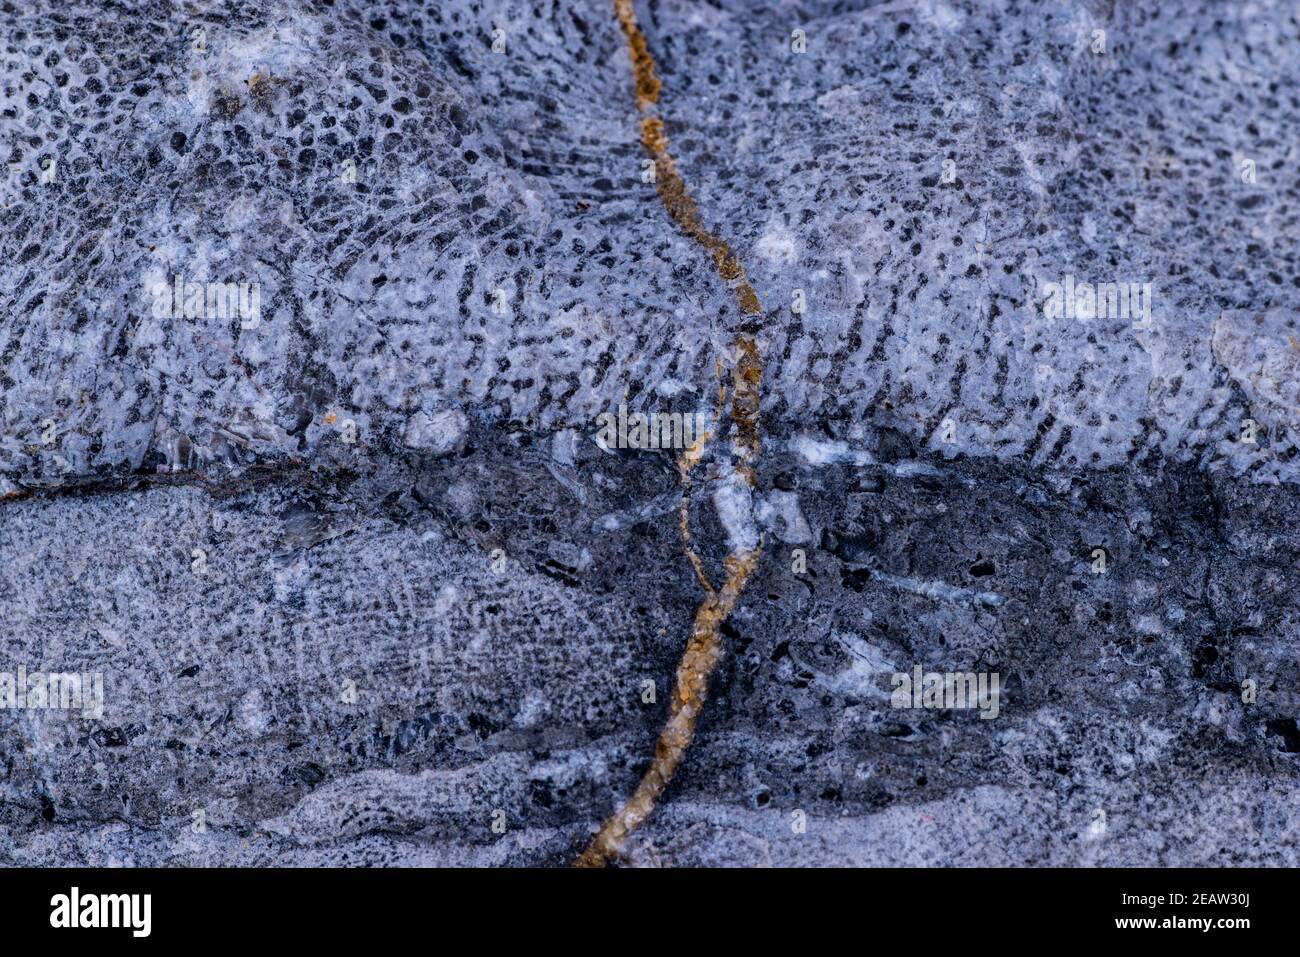 Kalkstein mit Bryozoa Fossilien in einer Nahaufnahme Stockfoto